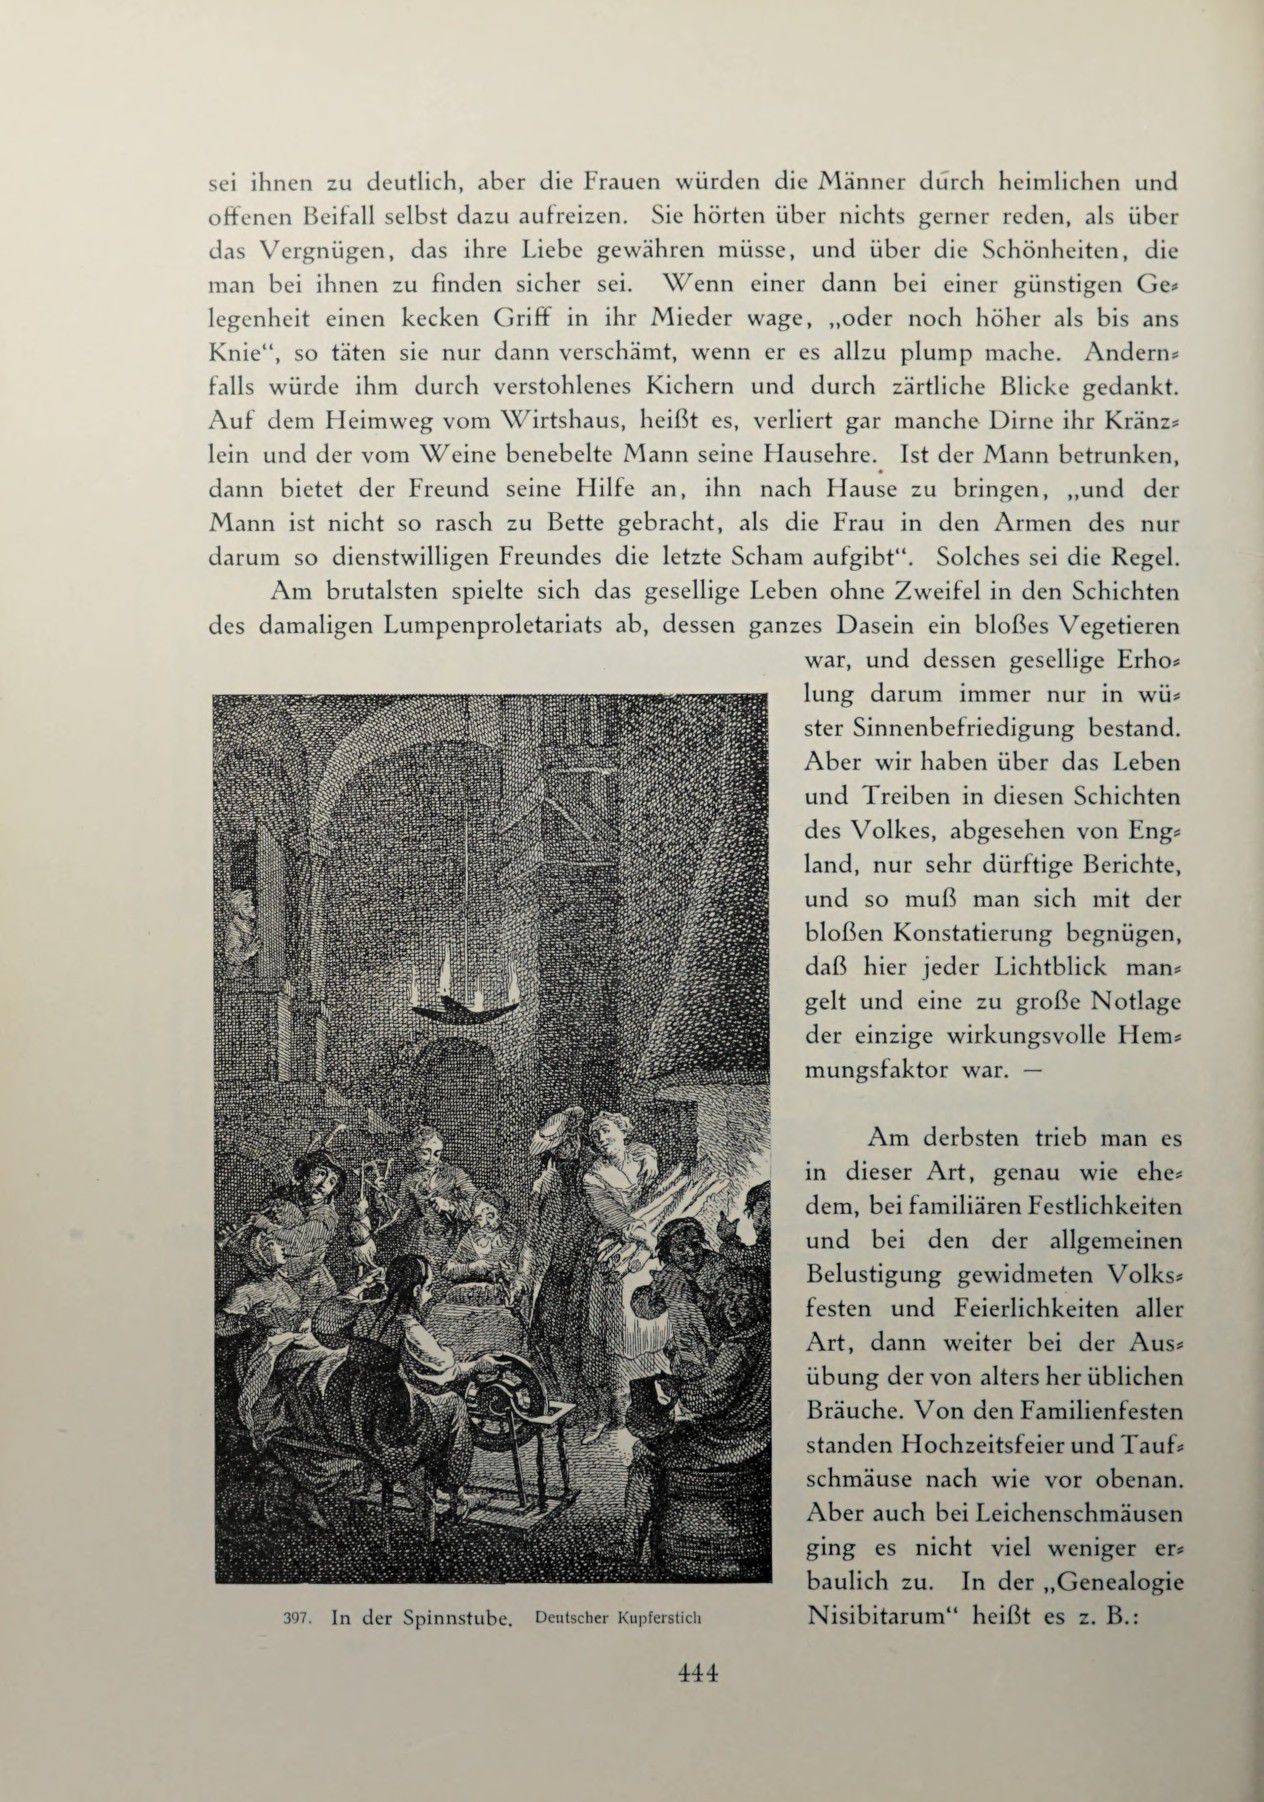 [Eduard Fuchs] Illustrierte Sittengeschichte vom Mittelalter bis zur Gegenwart: Bd. 2. and Ergänzungsband. Die galante Zeit [German] 635